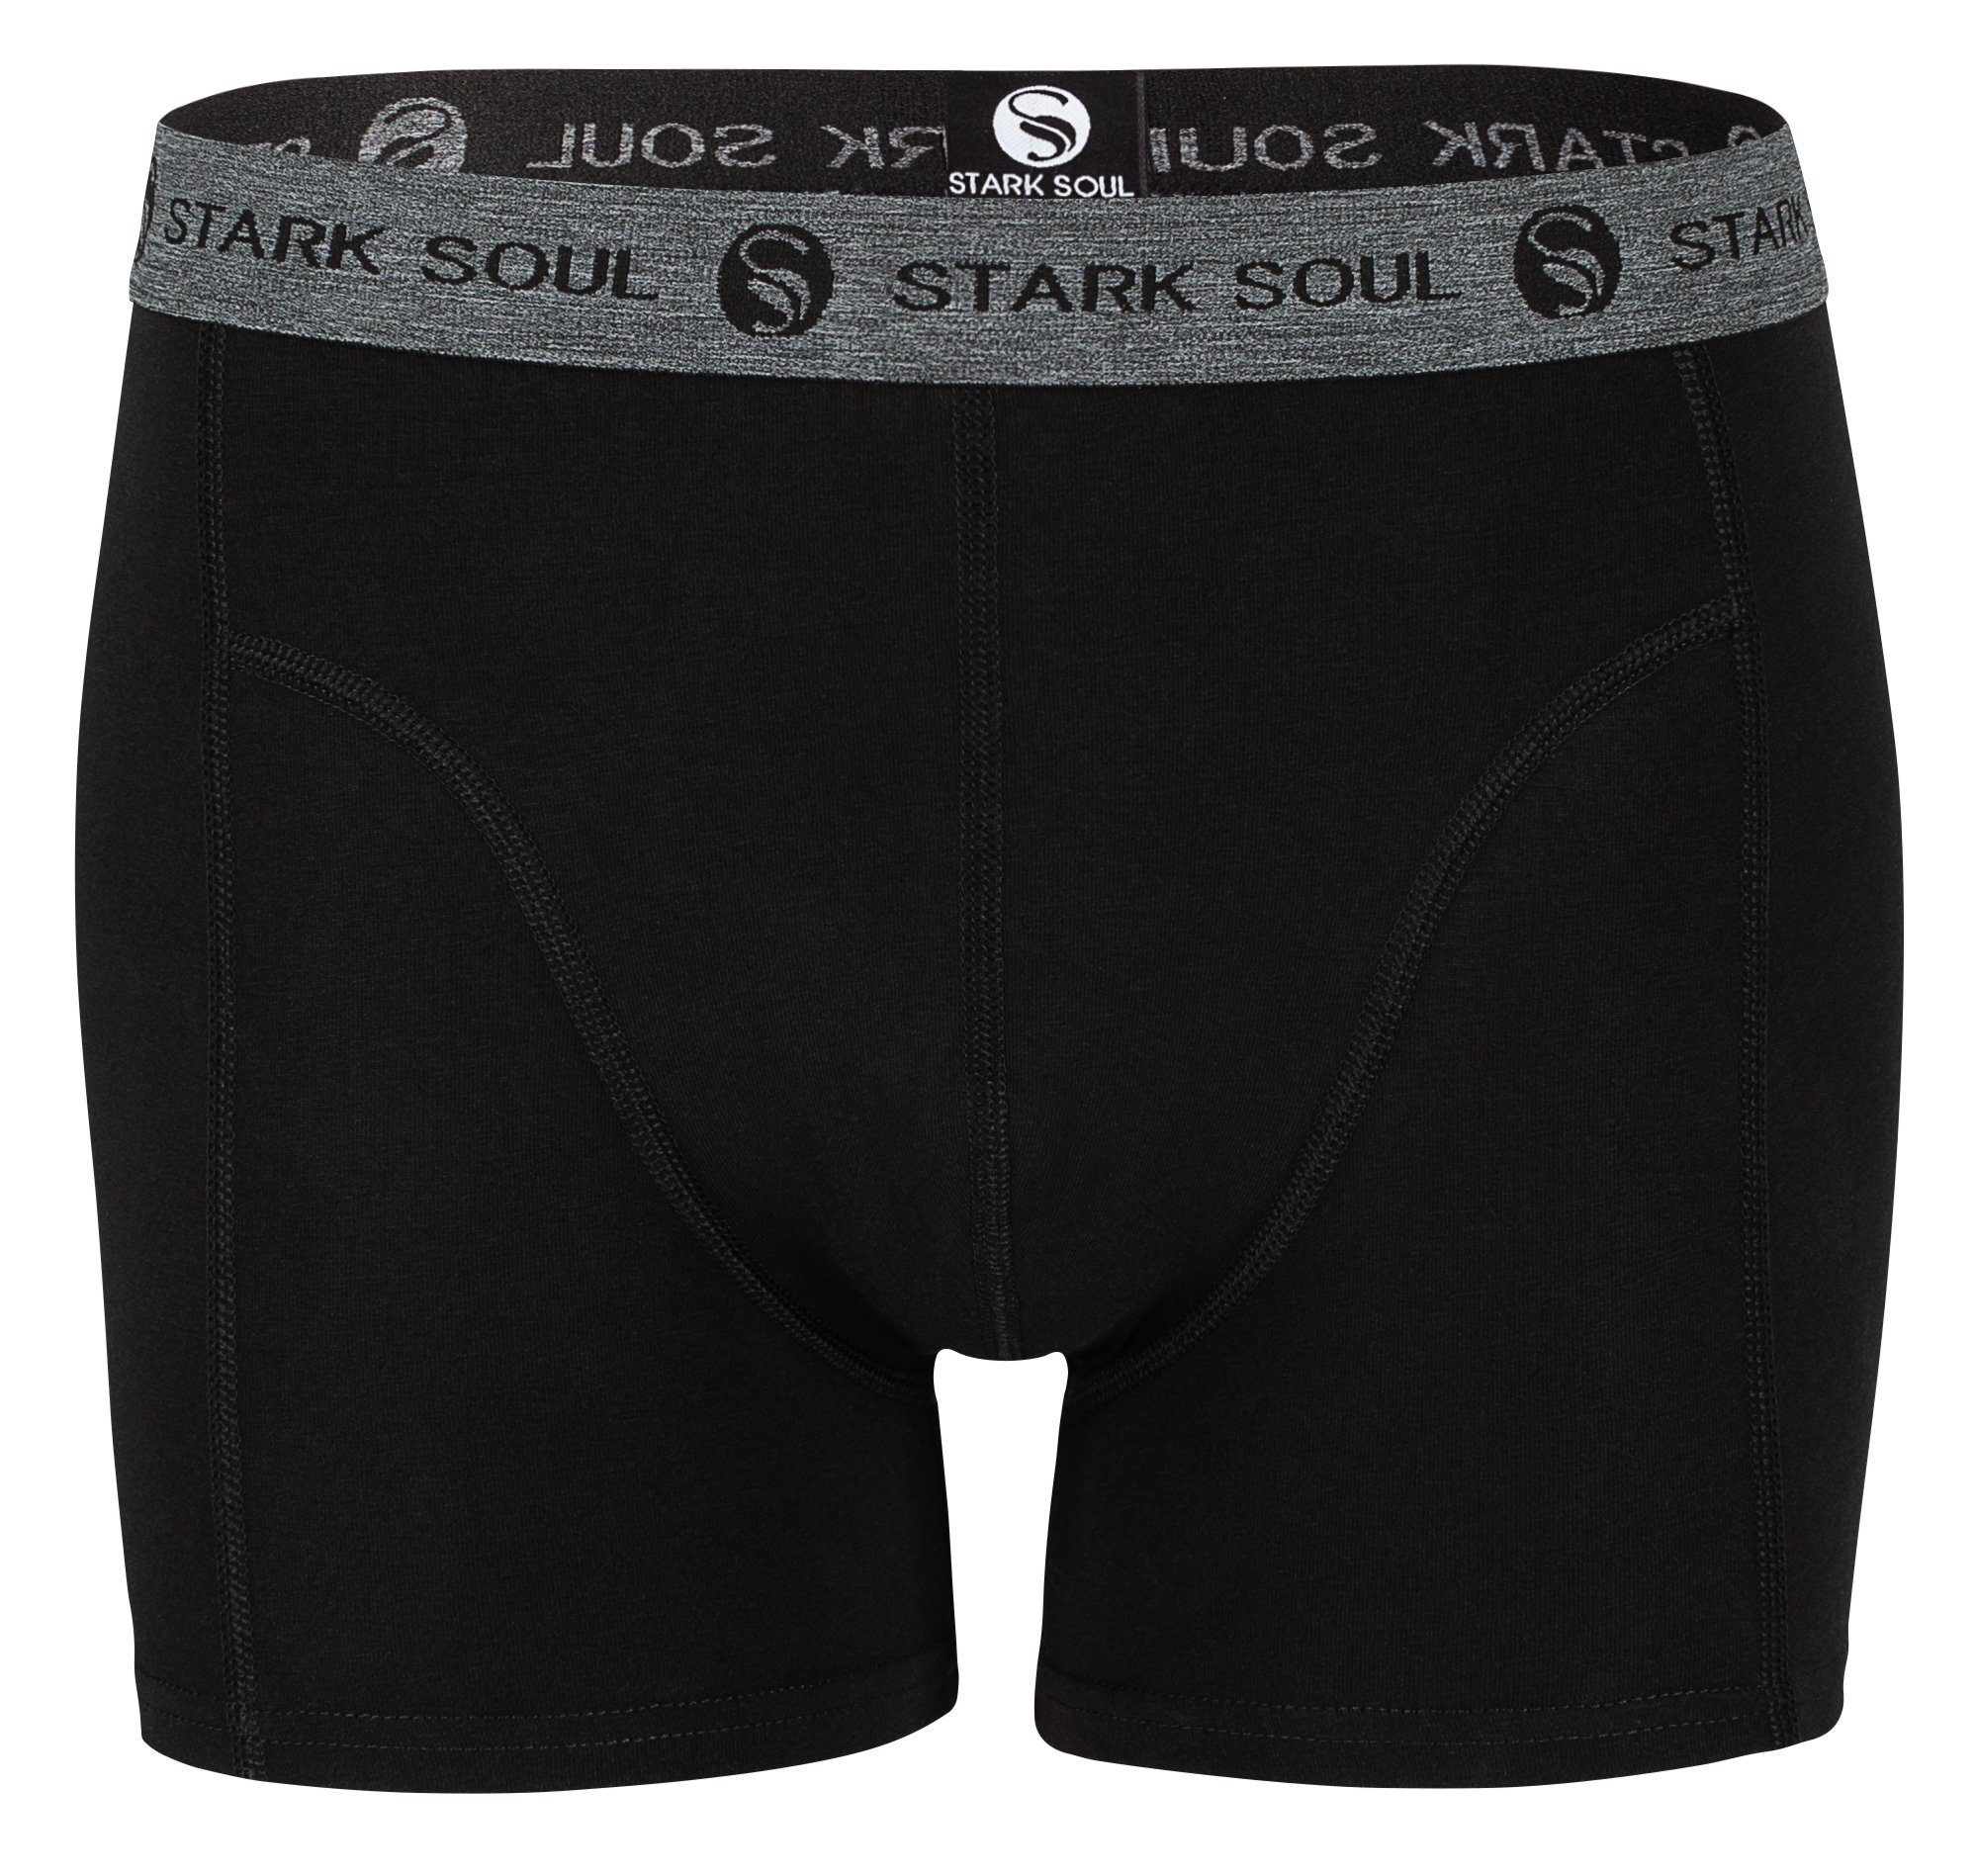 Stark Soul® Boxershorts Retroshorts, Herren - weiche Baumwolle 3er 3er-Pack Pack, Schwarz Boxershorts, Trunks